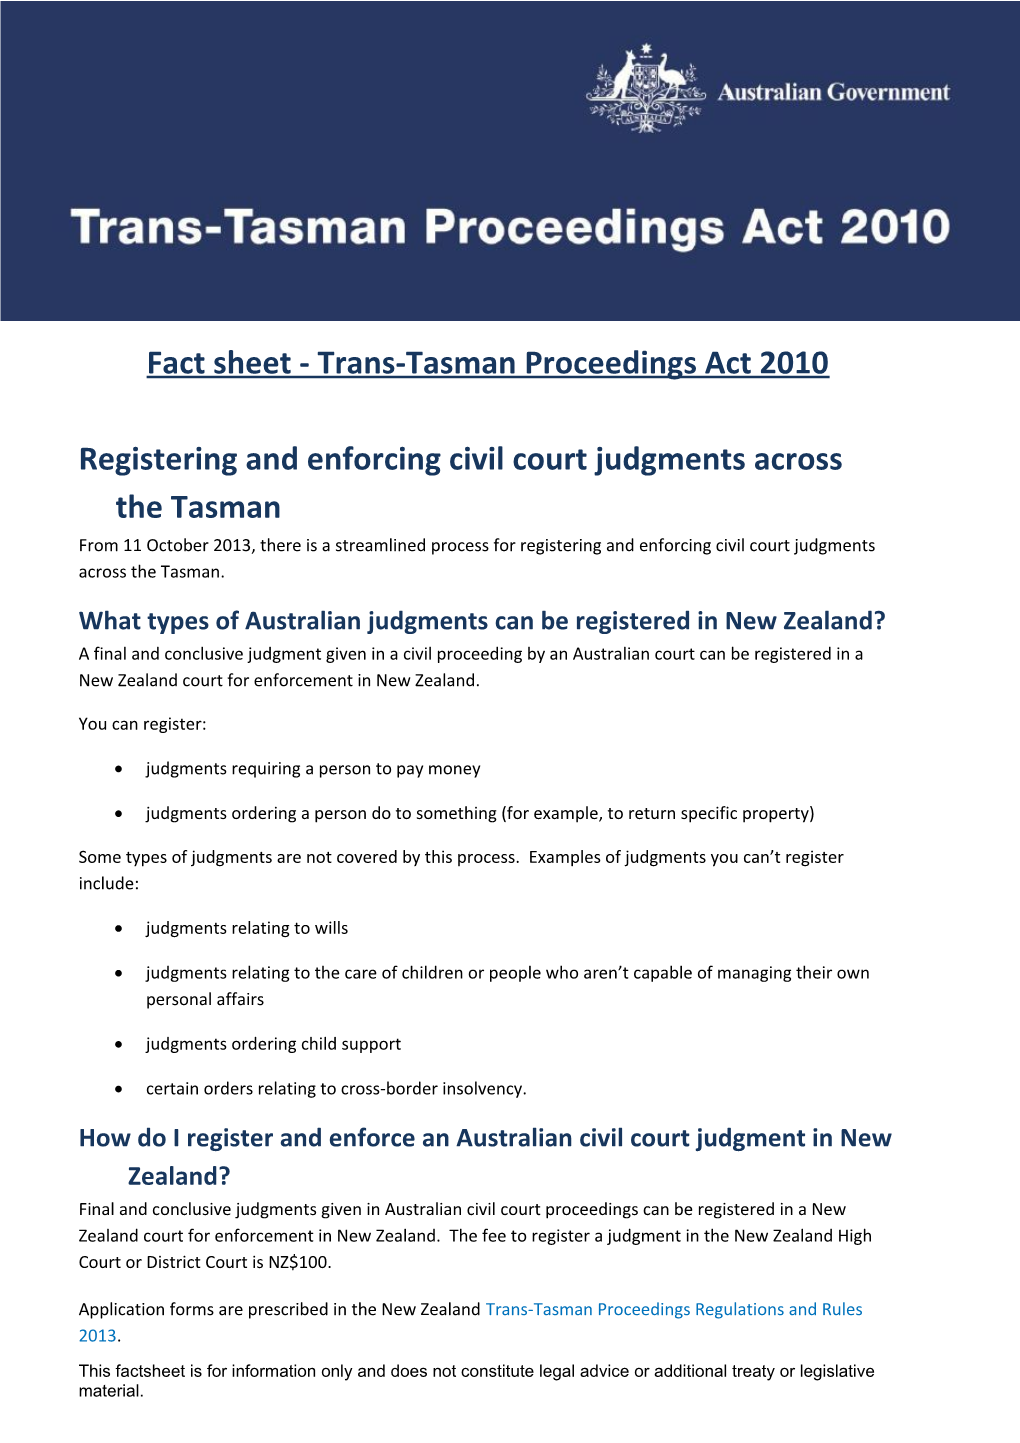 Fact Sheet - Trans-Tasman Proceedings Act 2010